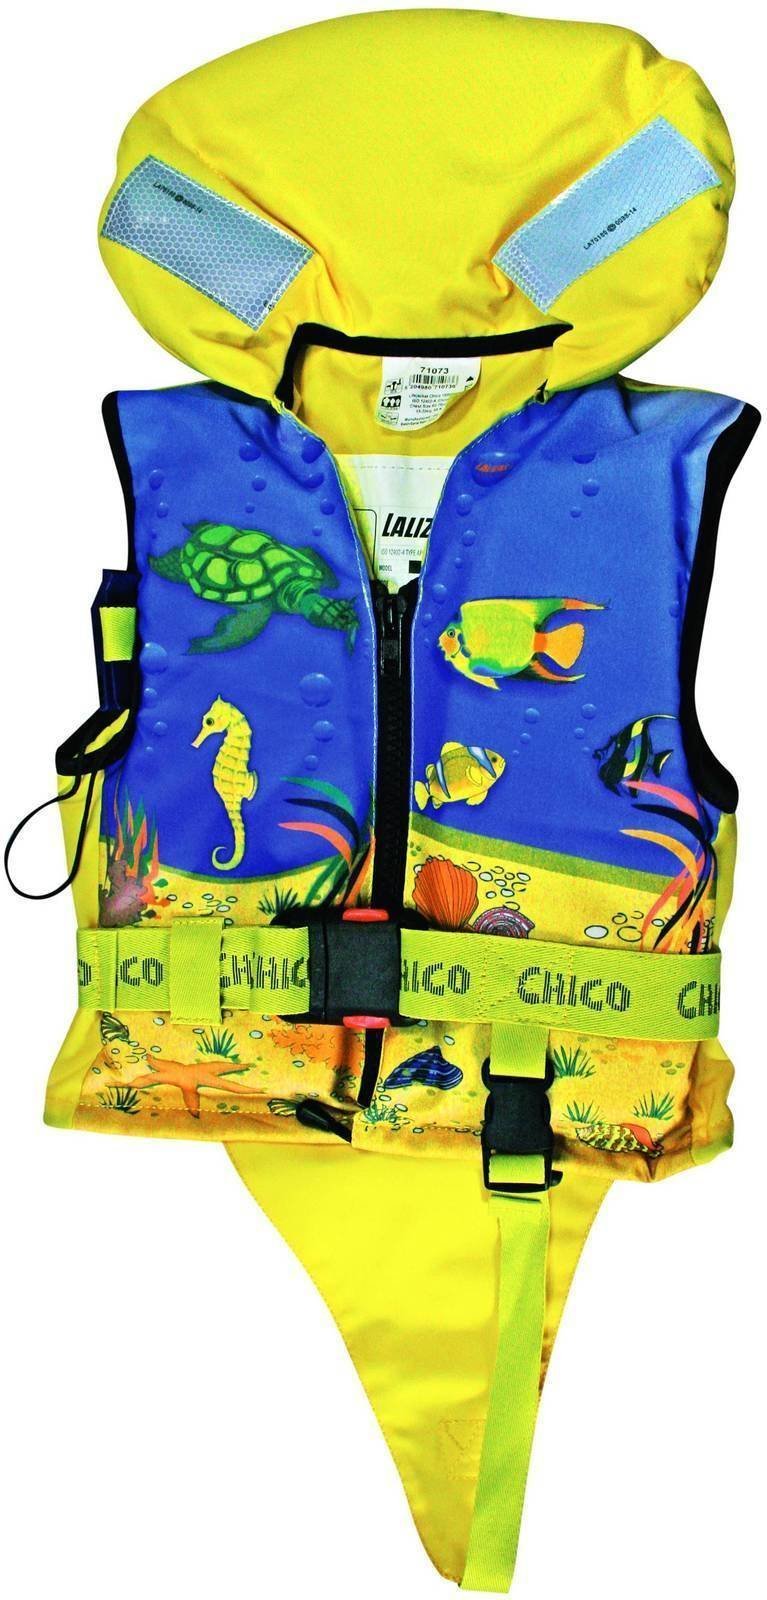 Rettungsweste Lalizas Chico Lifejacket 15-30kg